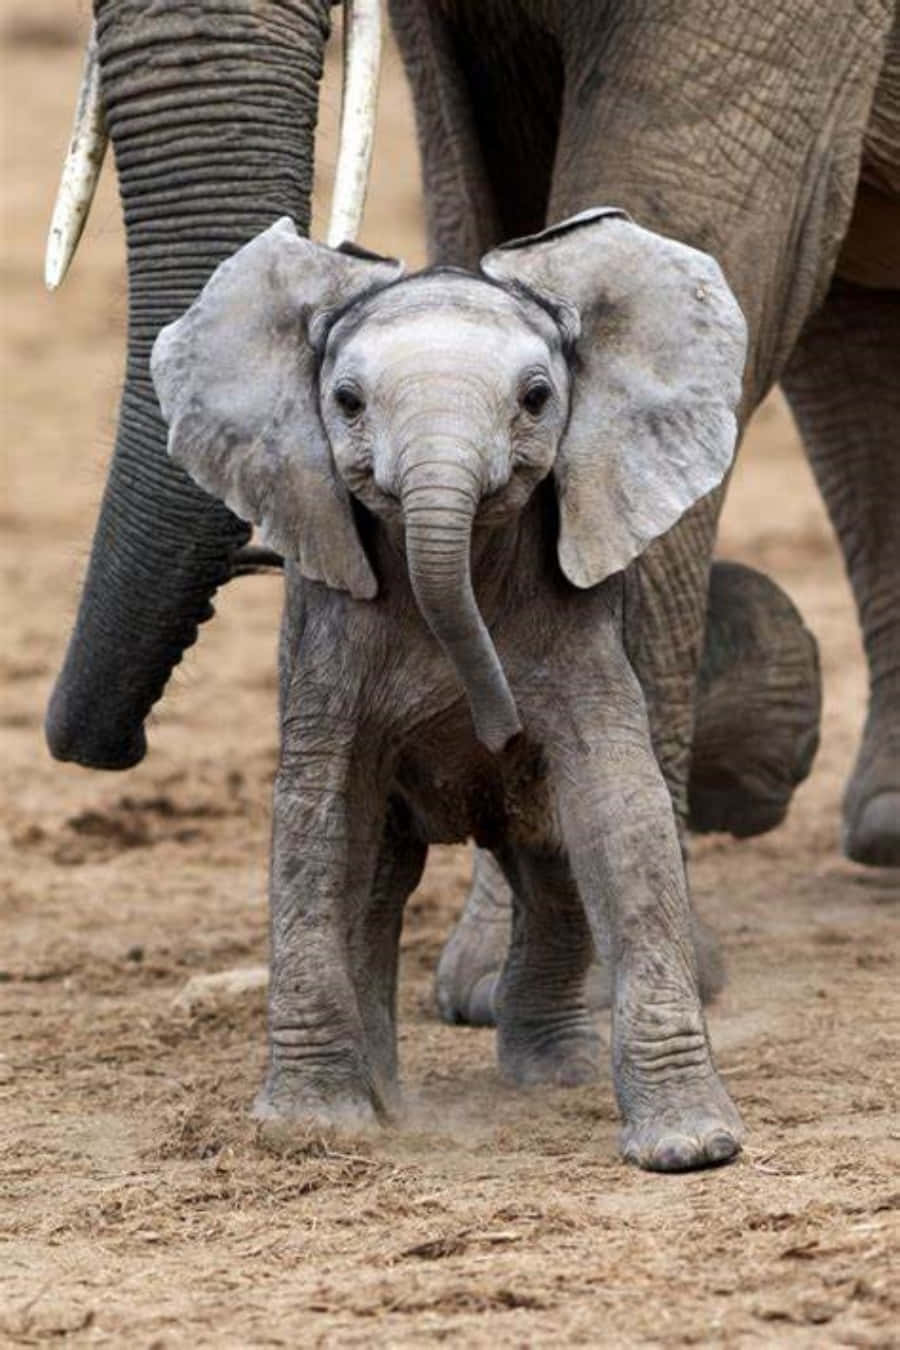 Sød Elefant krydser vejen.